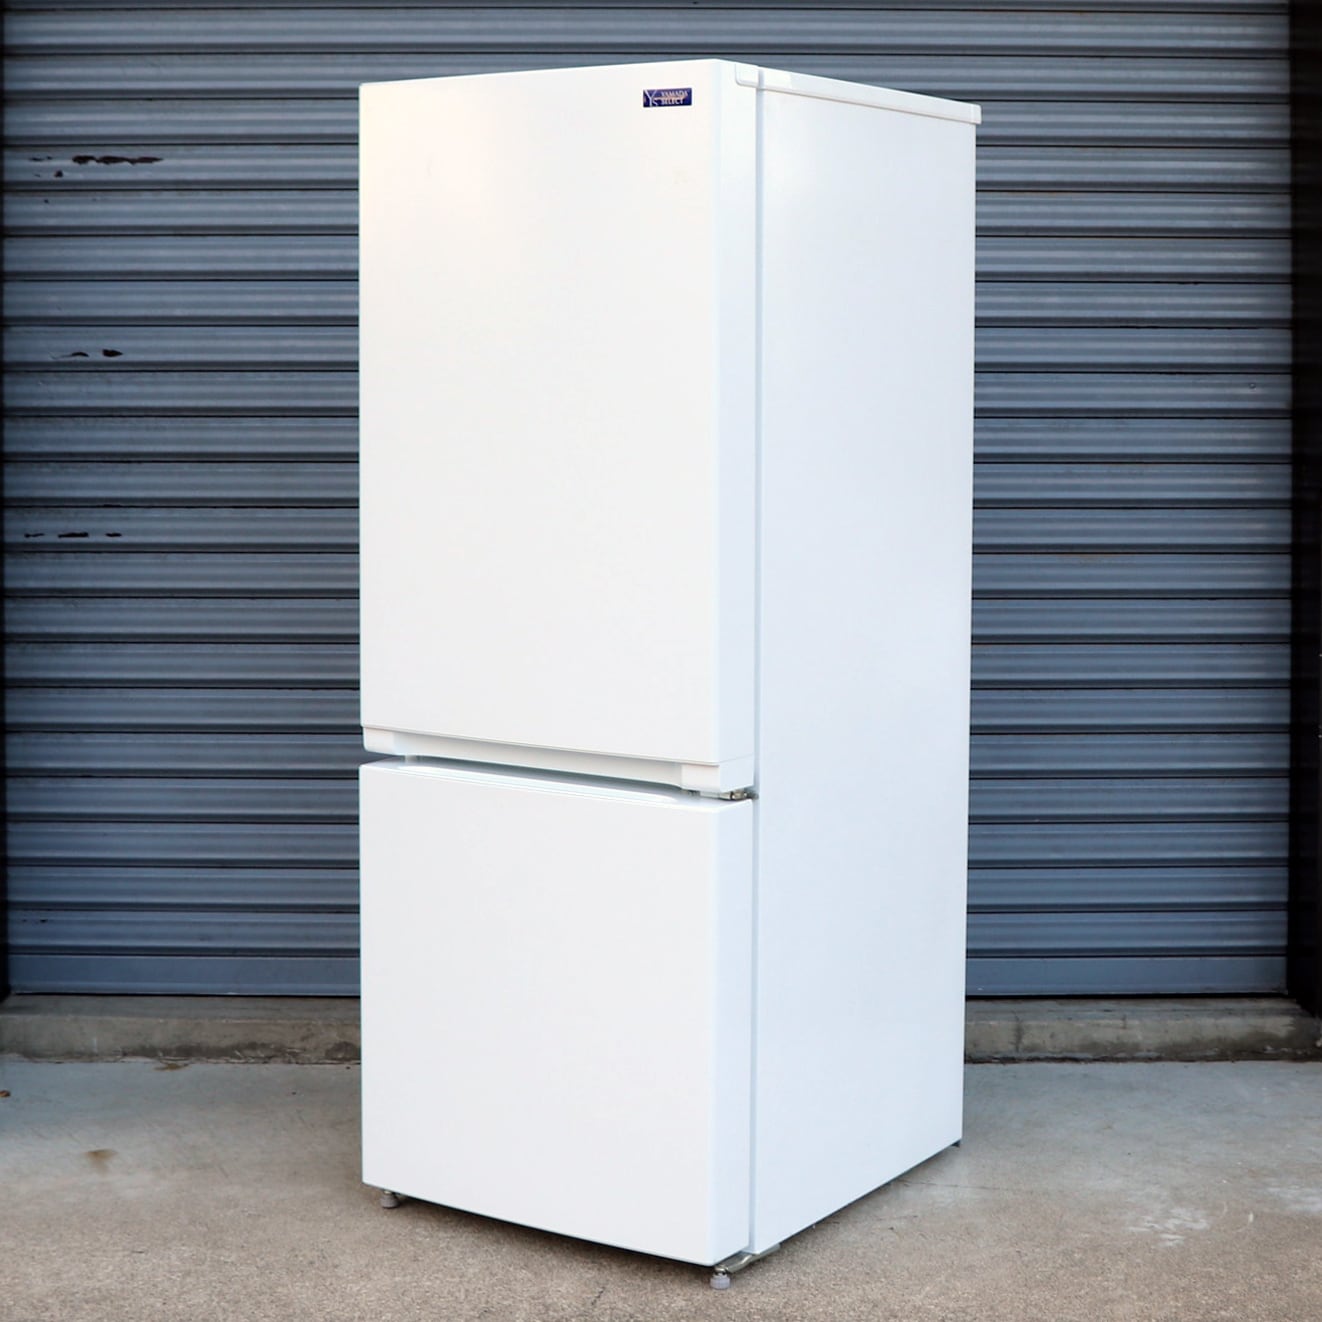 優先配送 ヤマダ電機 2ドア冷凍冷蔵庫 156L 2019年製